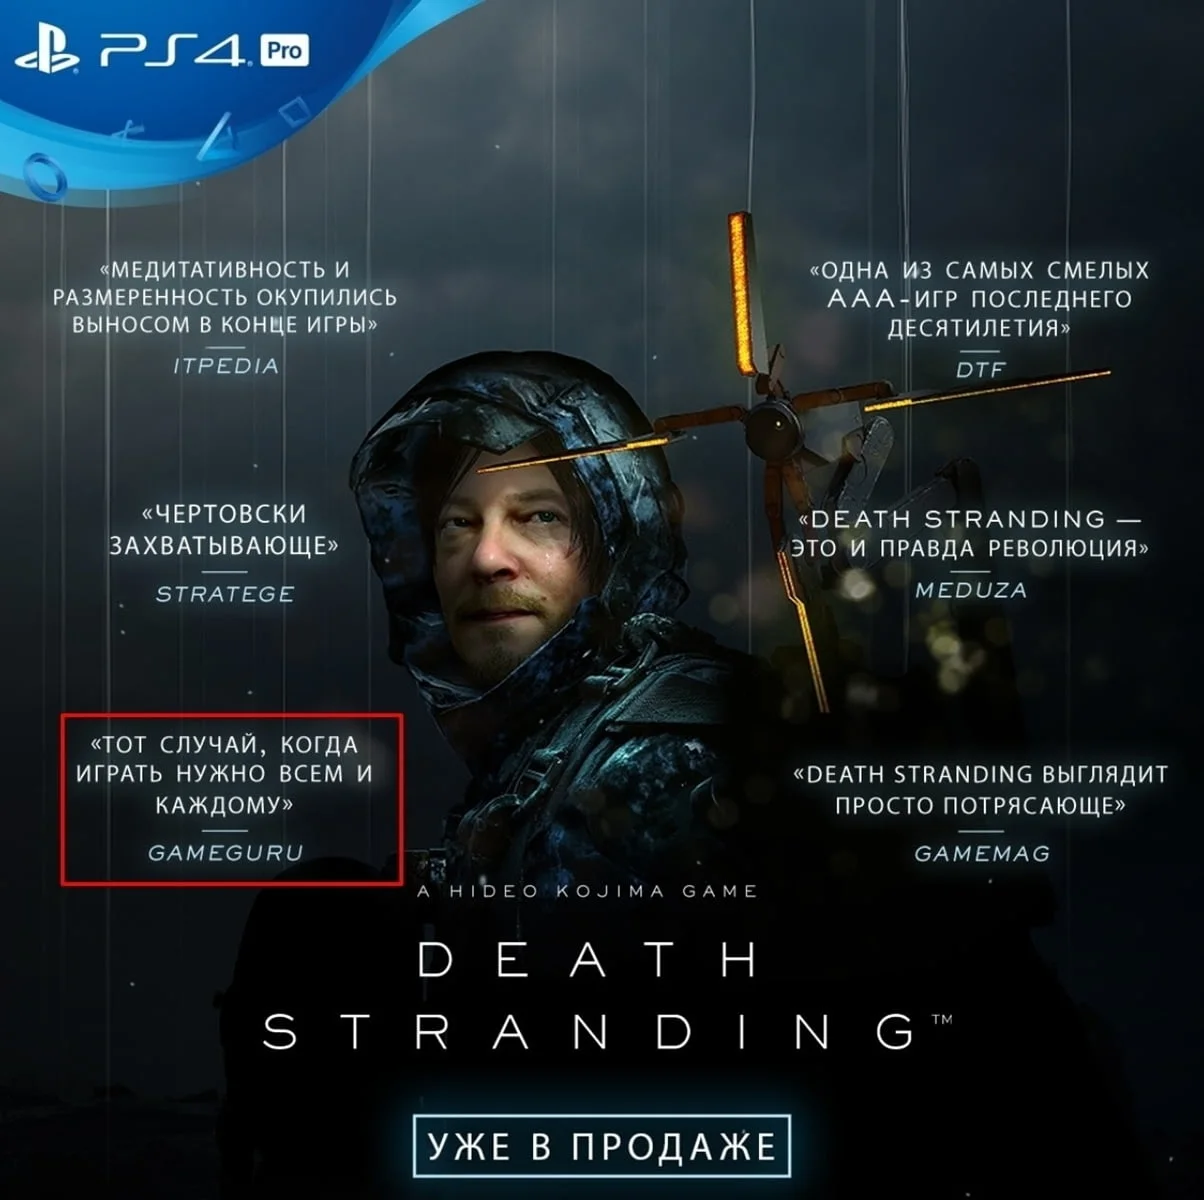 Российский офис PlayStation исказил цитату из обзора Death Stranding, сделав ее более положительной - фото 2